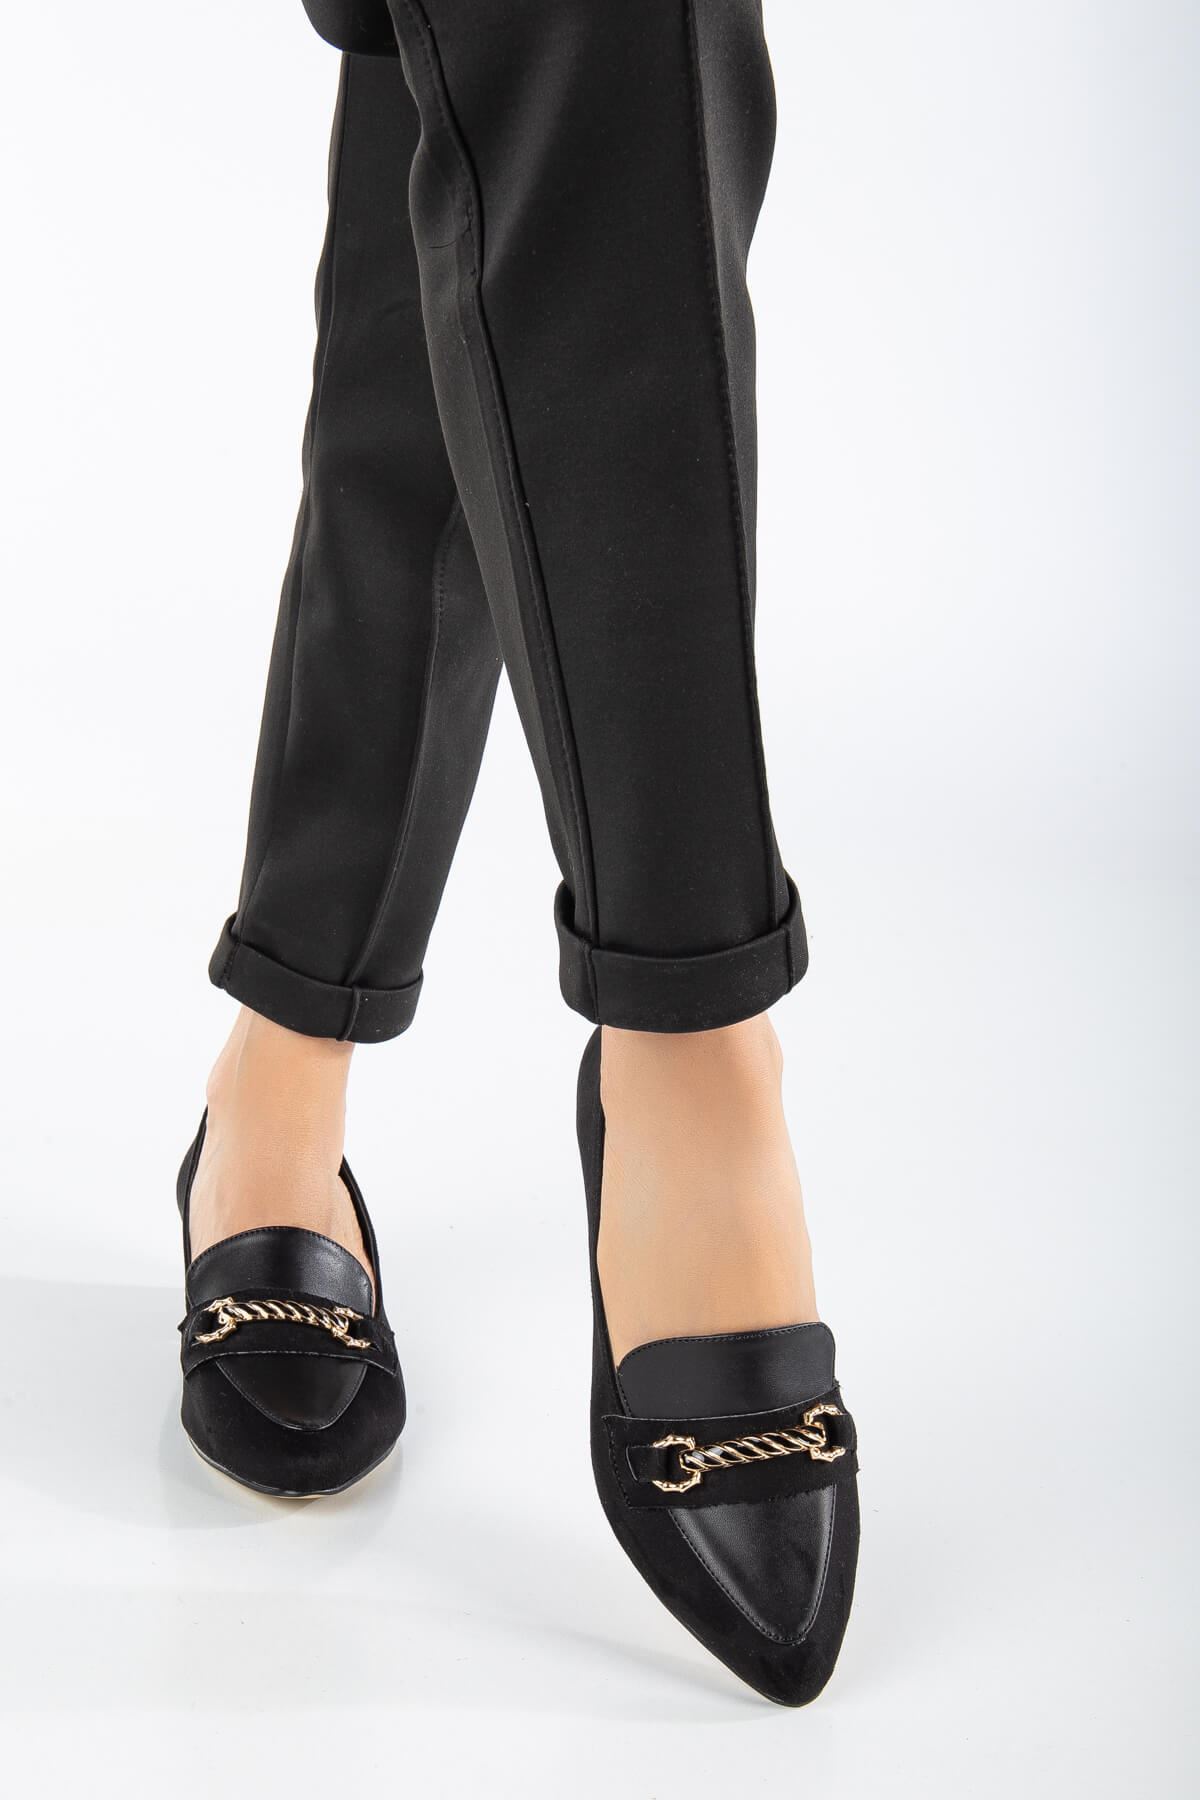 AUGUSTA Siyah Süet - Cilt Toka Detaylı Kadın Alçak Topuklu Ayakkabı 